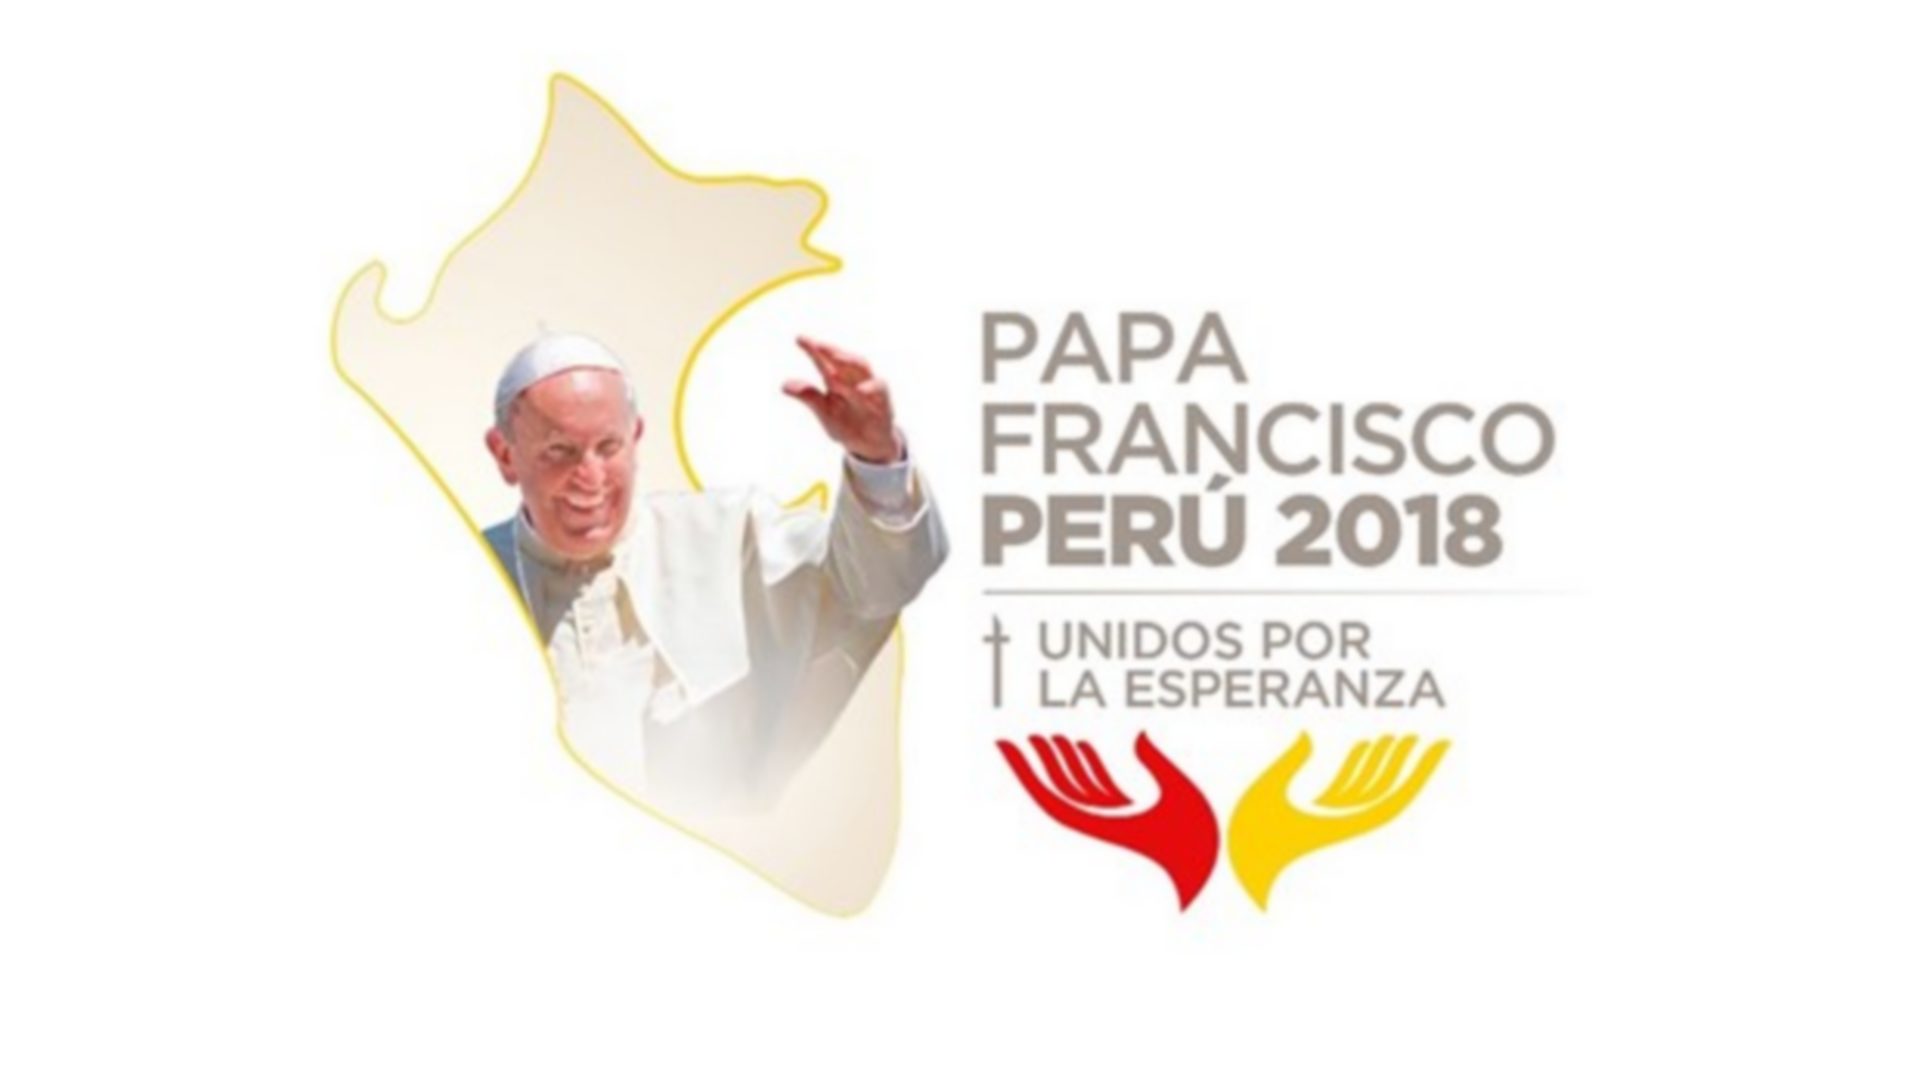 Le logo officiel du voyage du pape François au Pérou en janvier 2018